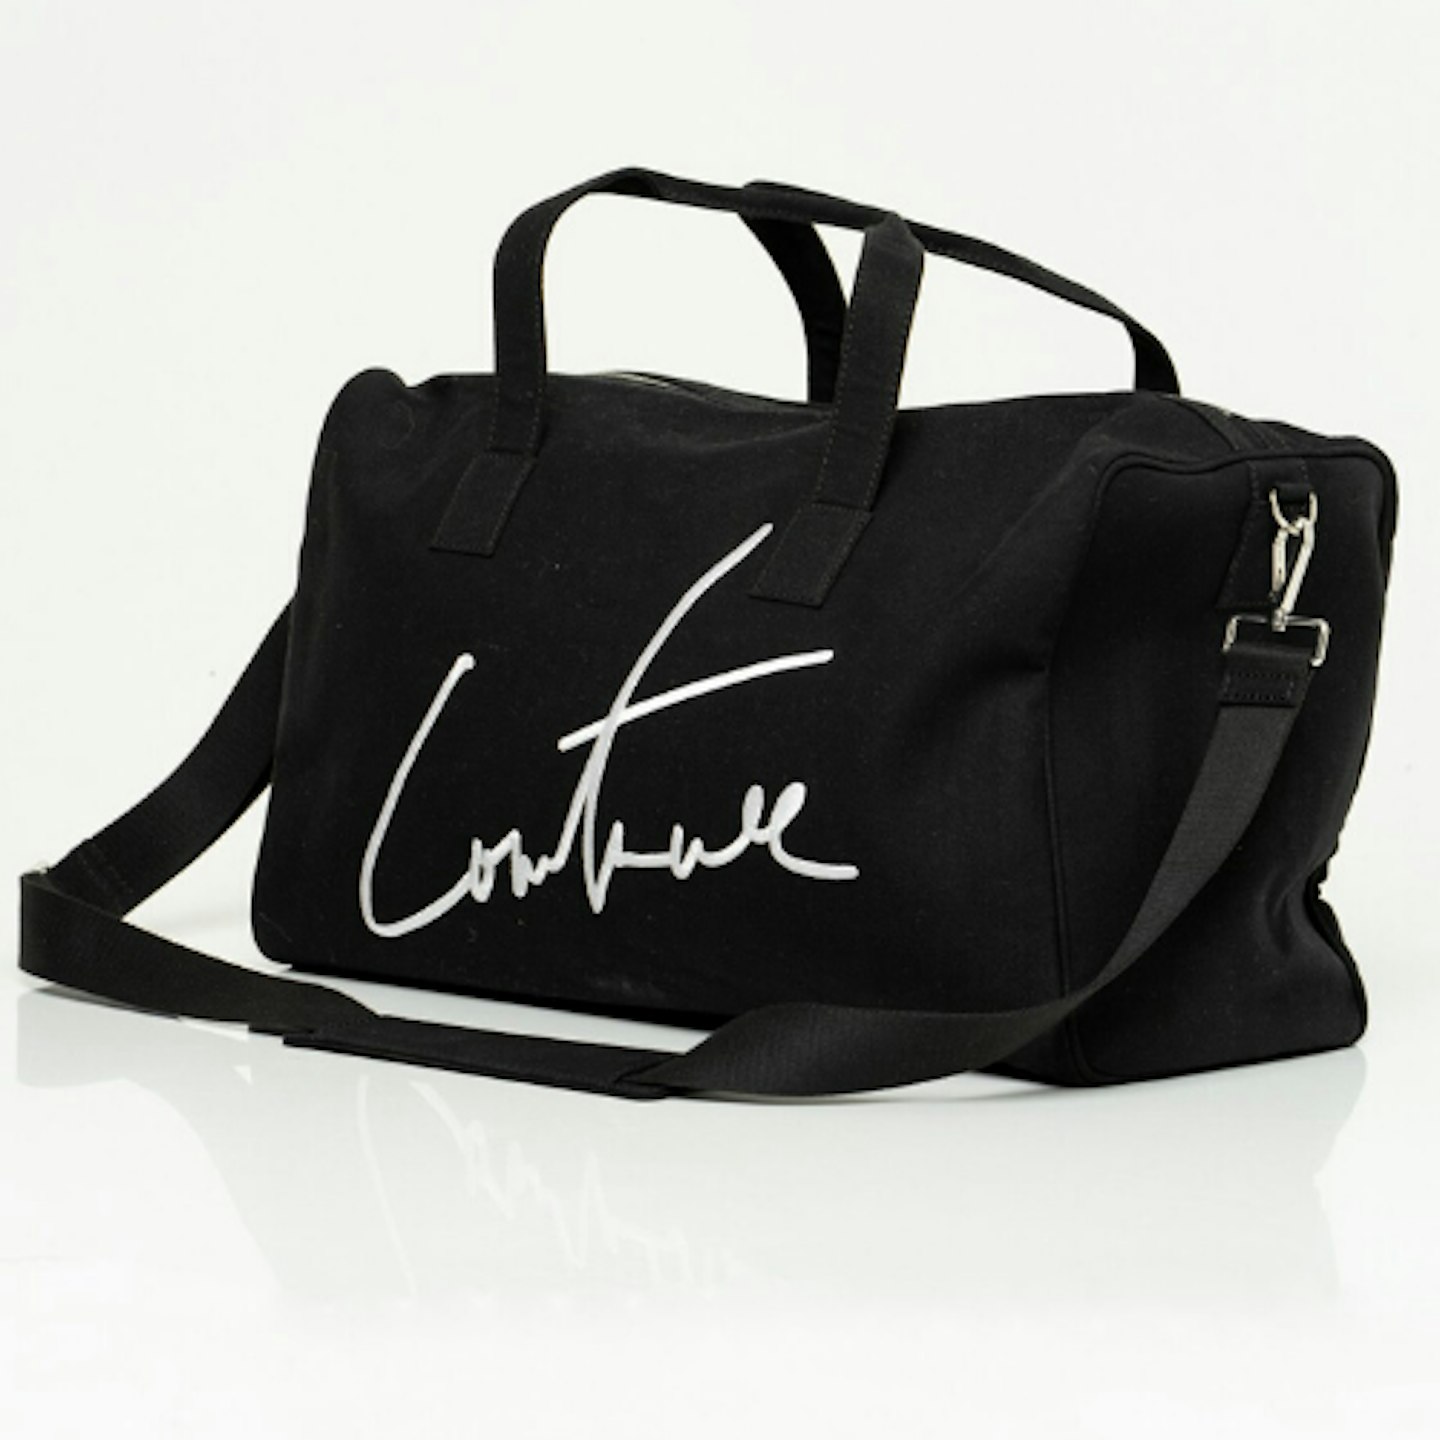 Couture Sport Signature Travel Bag